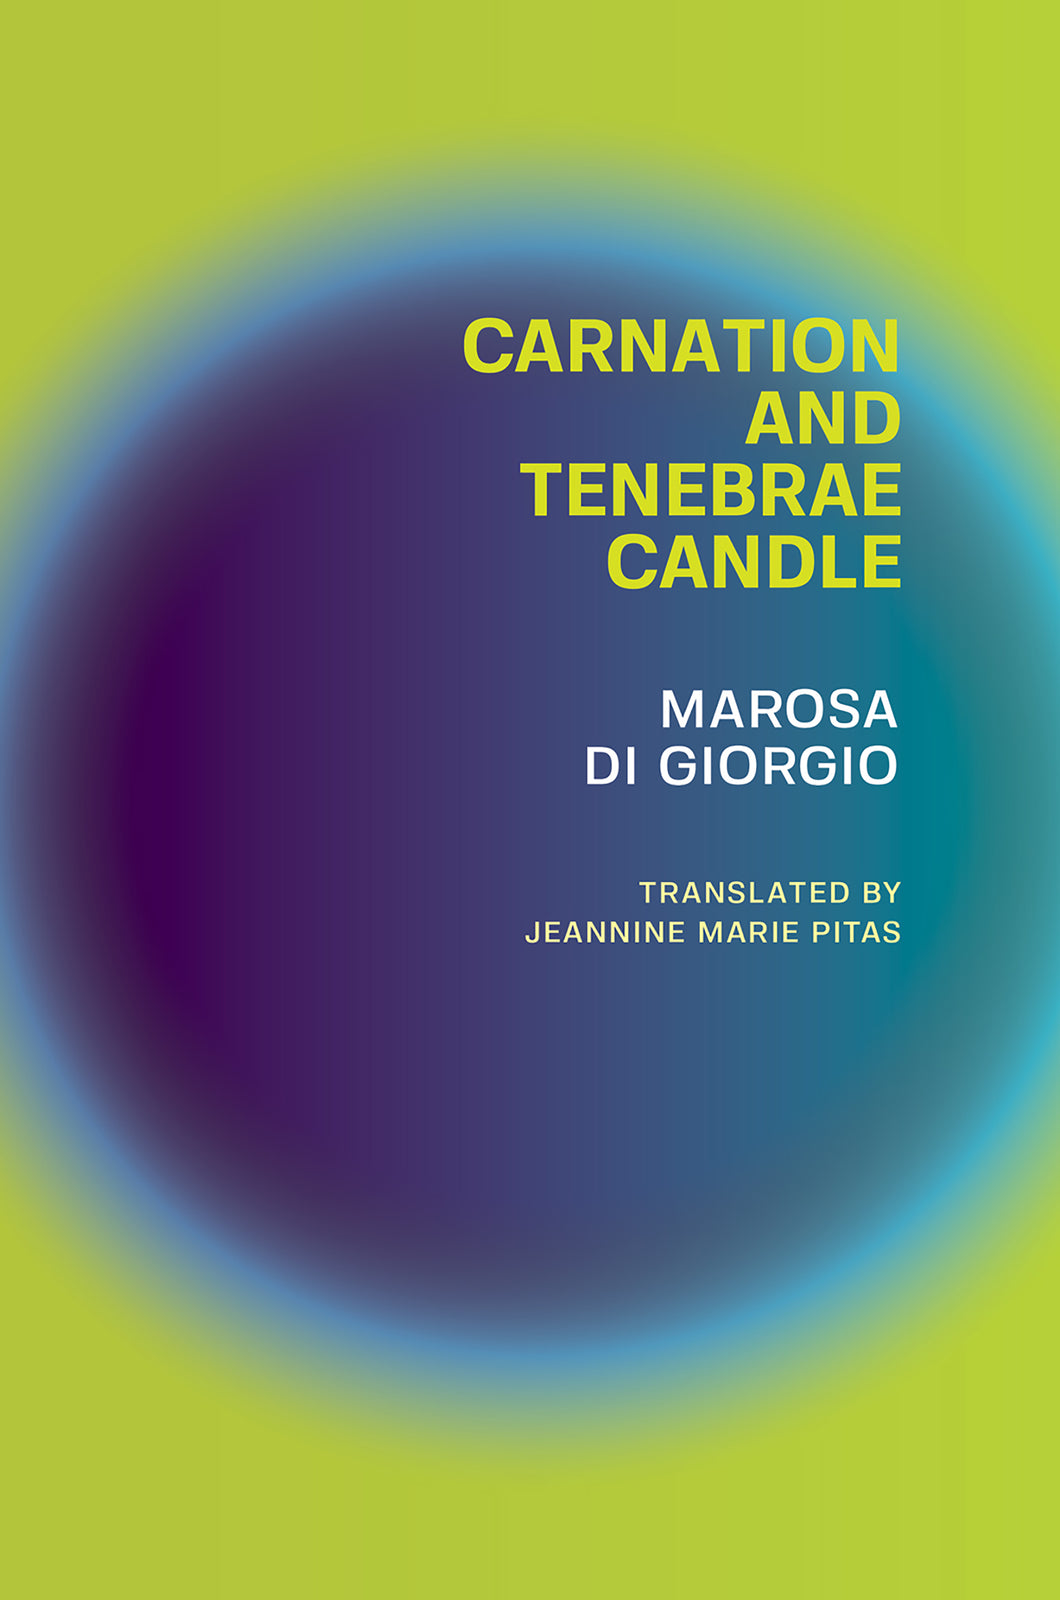 Di Giorgio, Marosa: Carnation and Tenebrae Candle